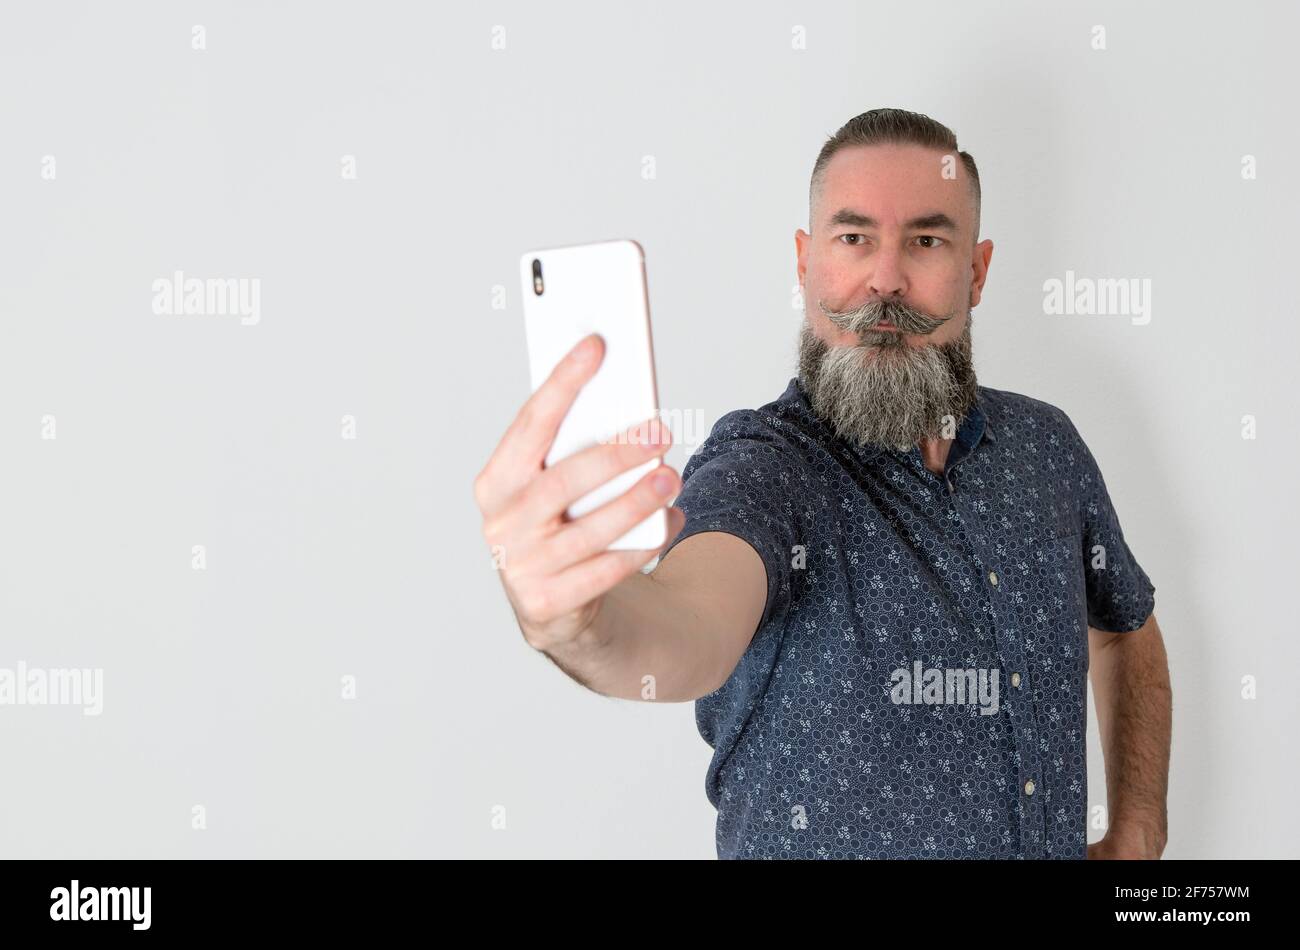 Bärtiger Hipster-Stil mit kaukasischem Aussehen 40-45 Jahre alt mit dem Smartphone, um ein Selbstporträt zu machen, Selfie. Selektiver Fokus Stockfoto